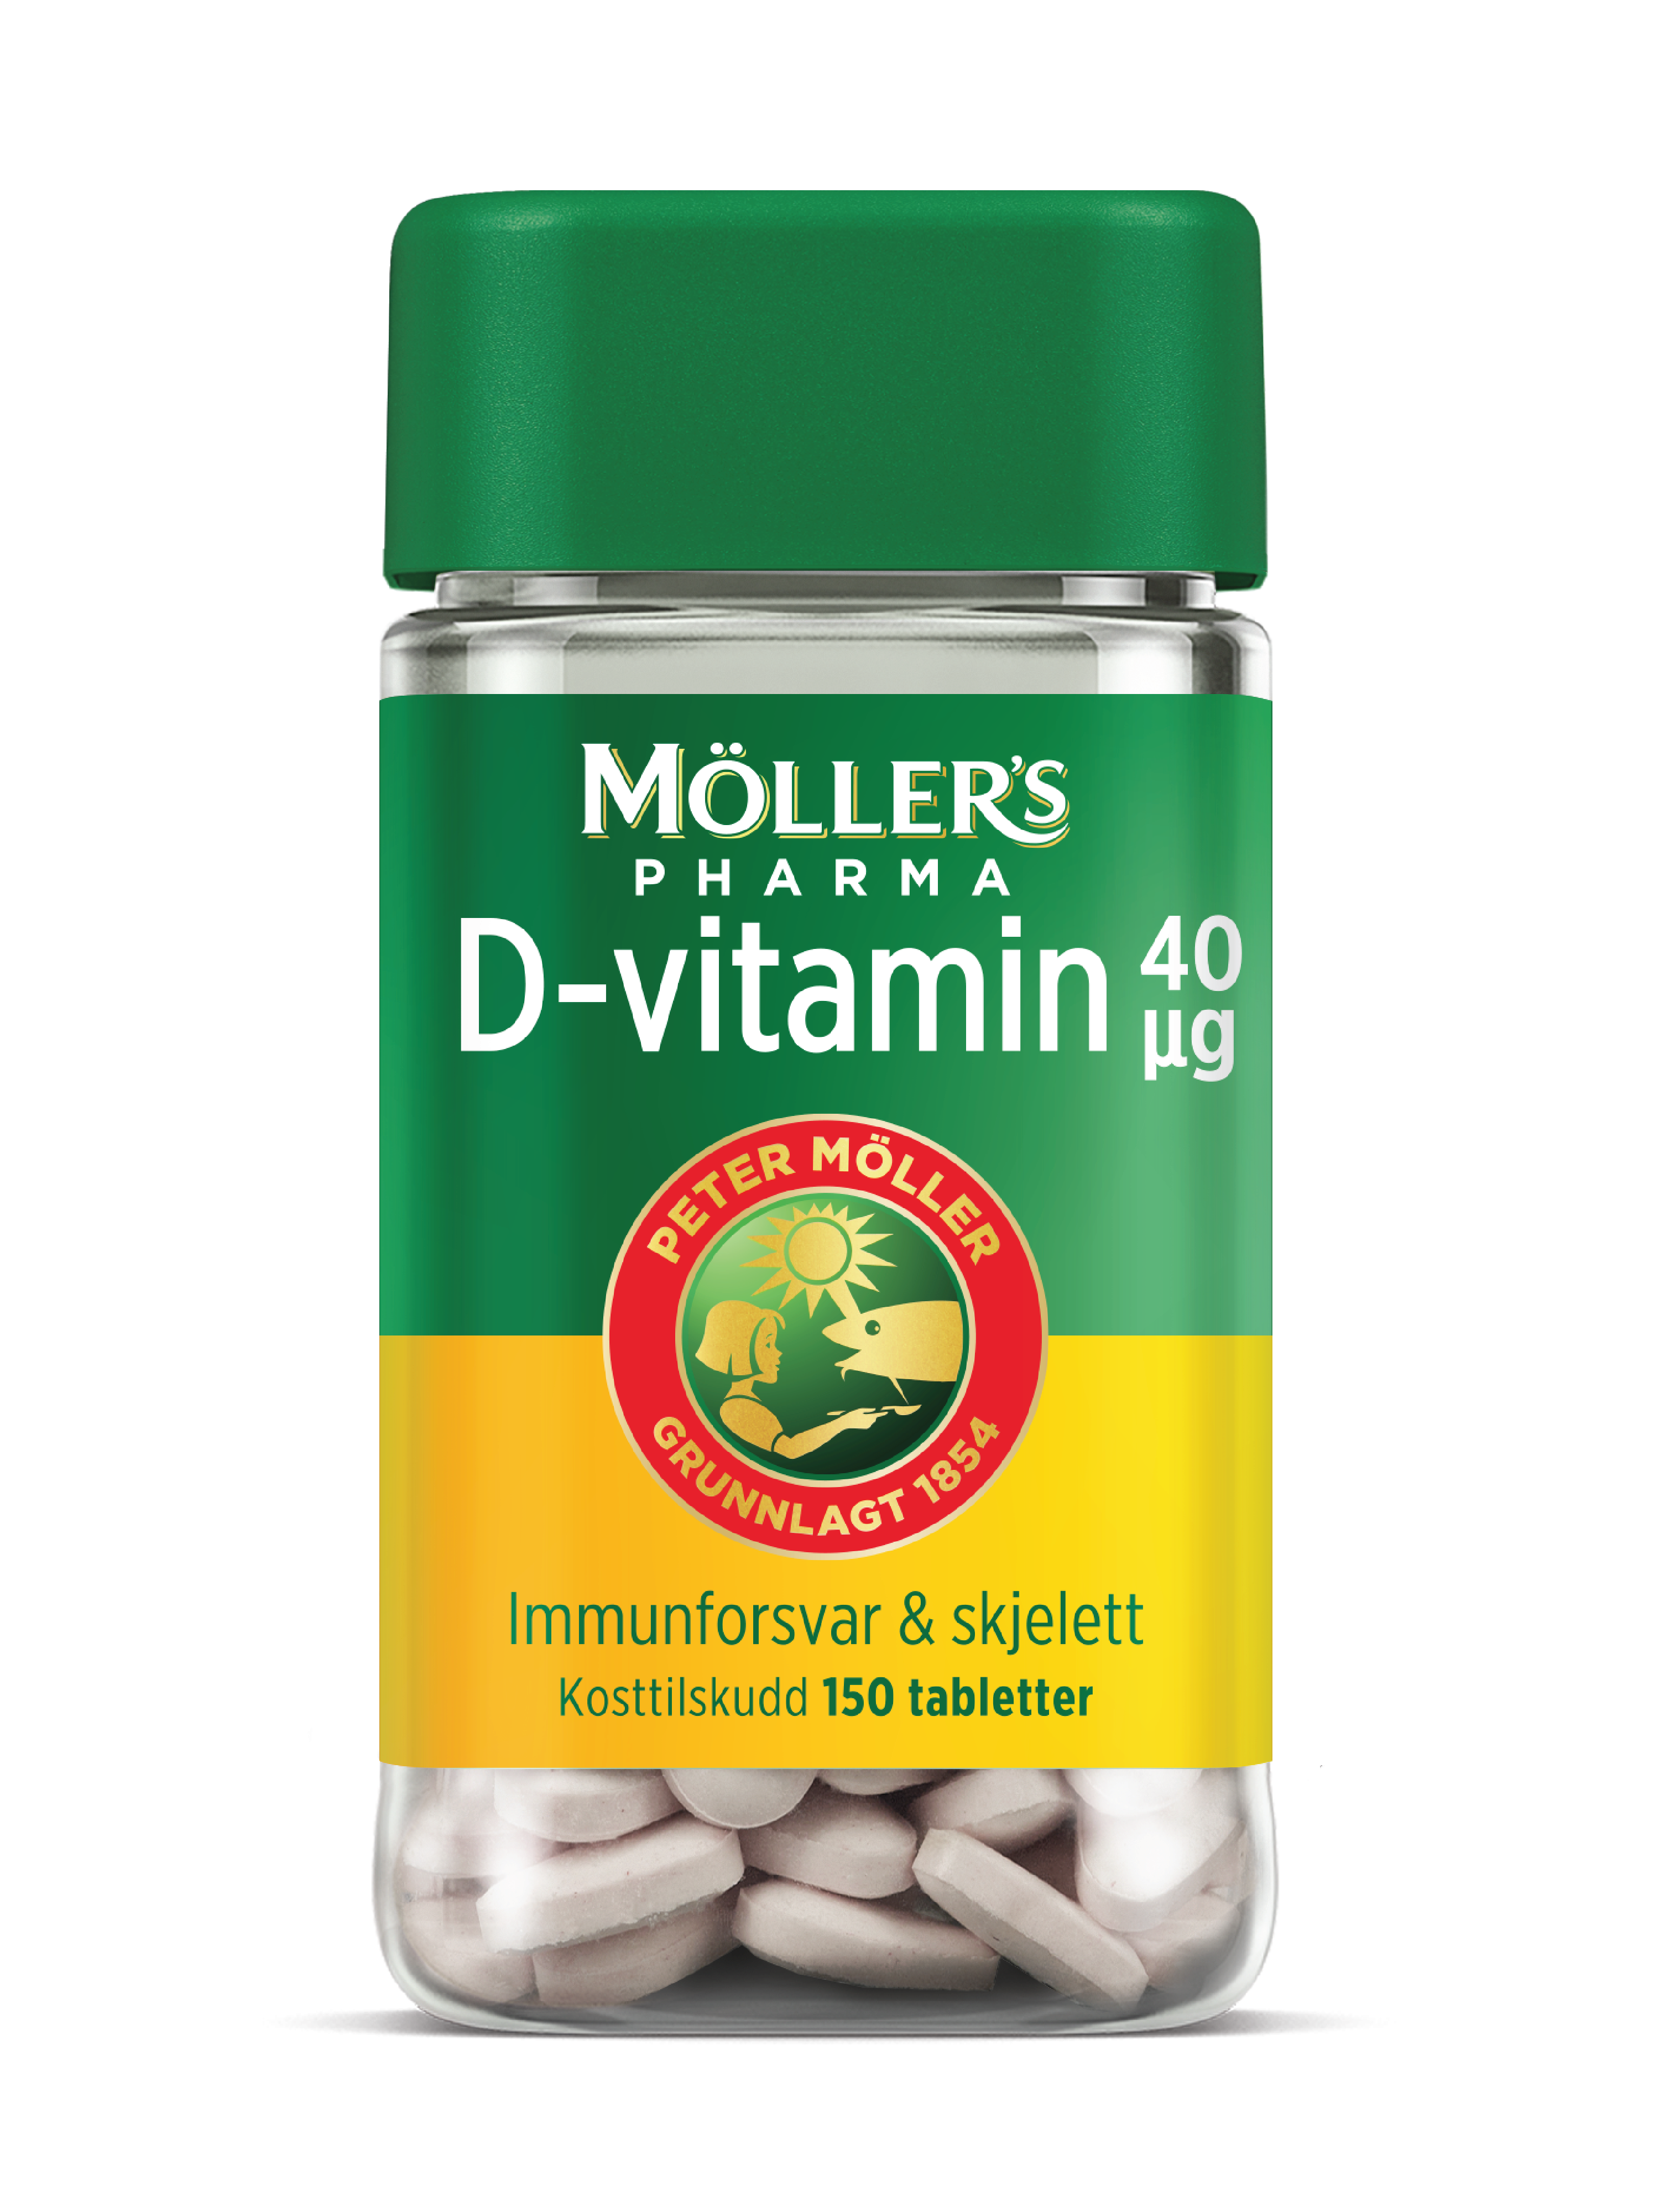 Möller's Pharma 40 µg D-vitamin tabletter, 150 stk.